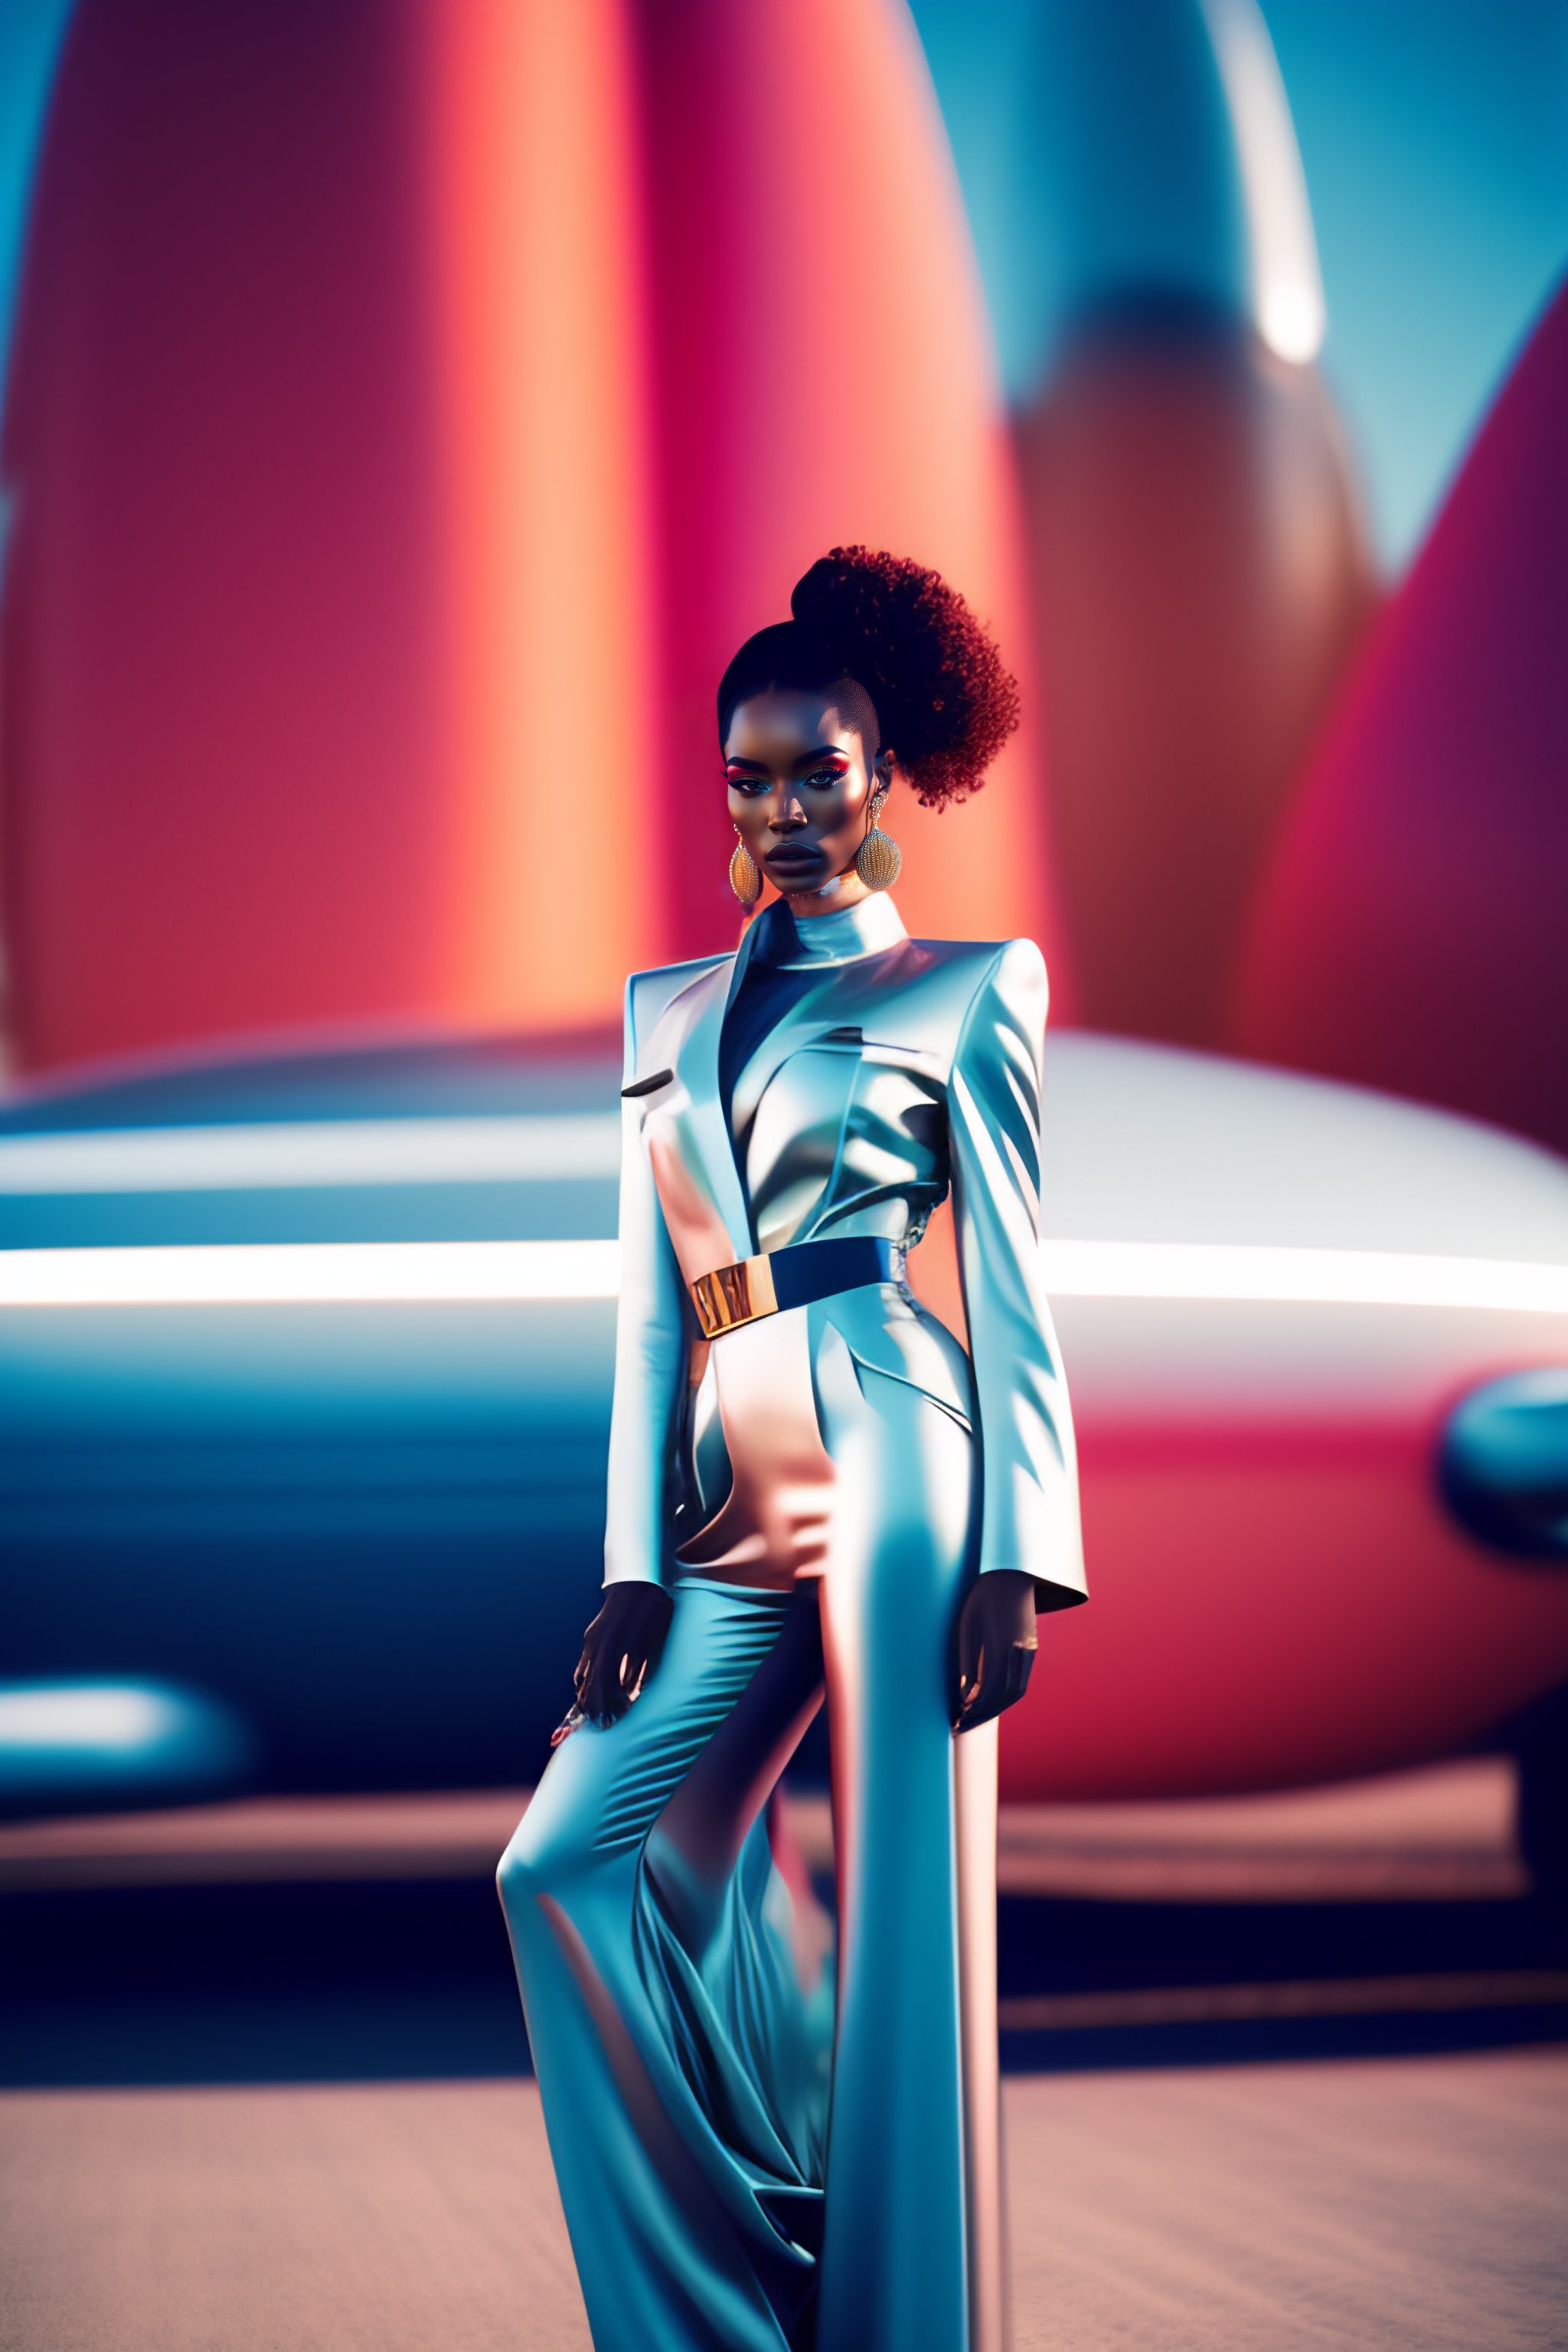 Lexica - futuristic outfit